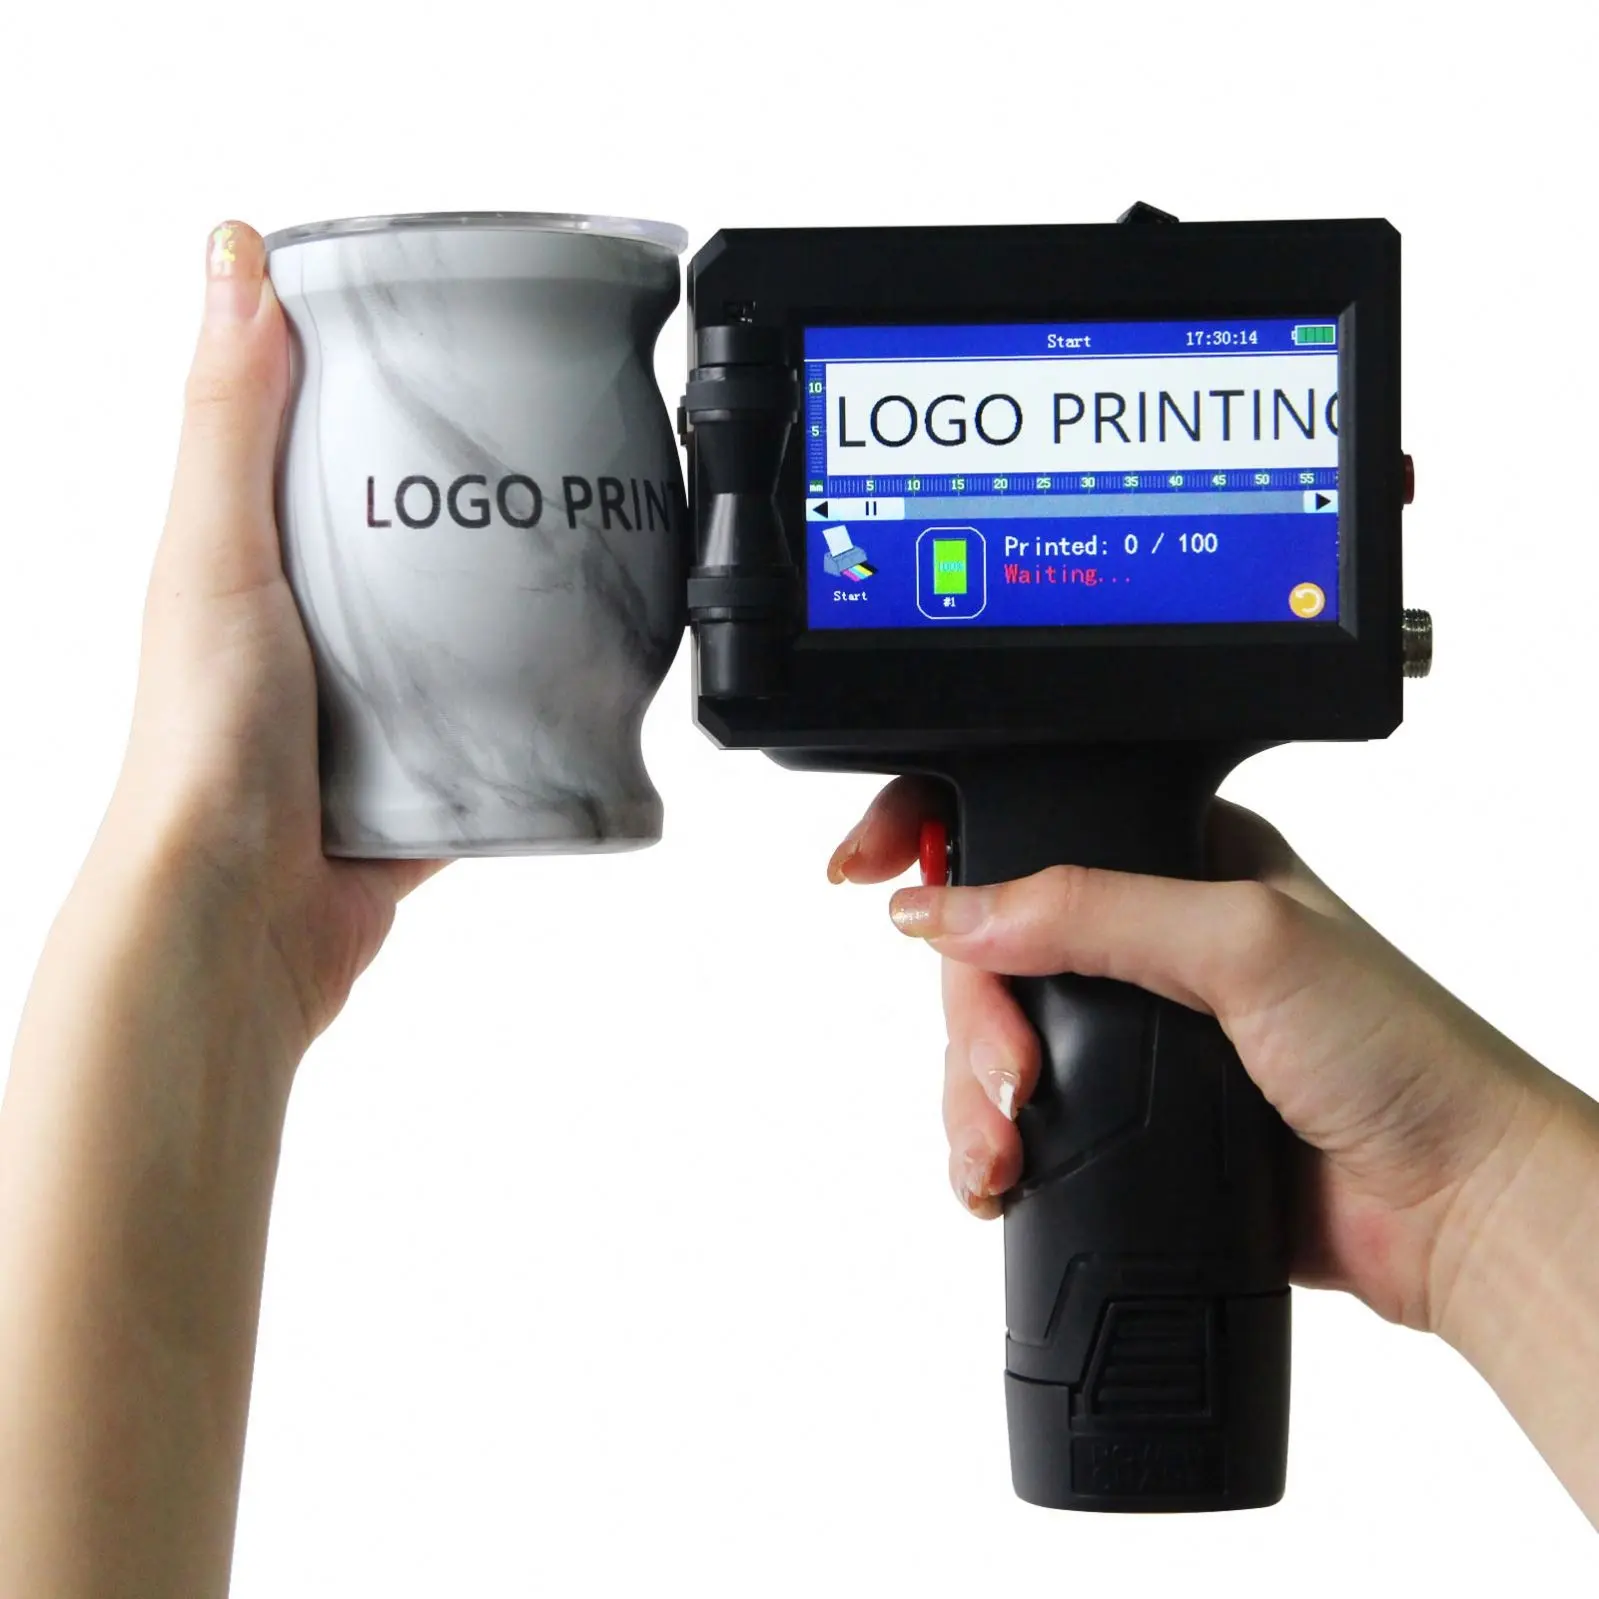 페이셜 클렌저, 식품 포장, 오목볼록한 곡면 코딩을 위한 새로운 미니 핸드헬드 소형 잉크젯 프린터